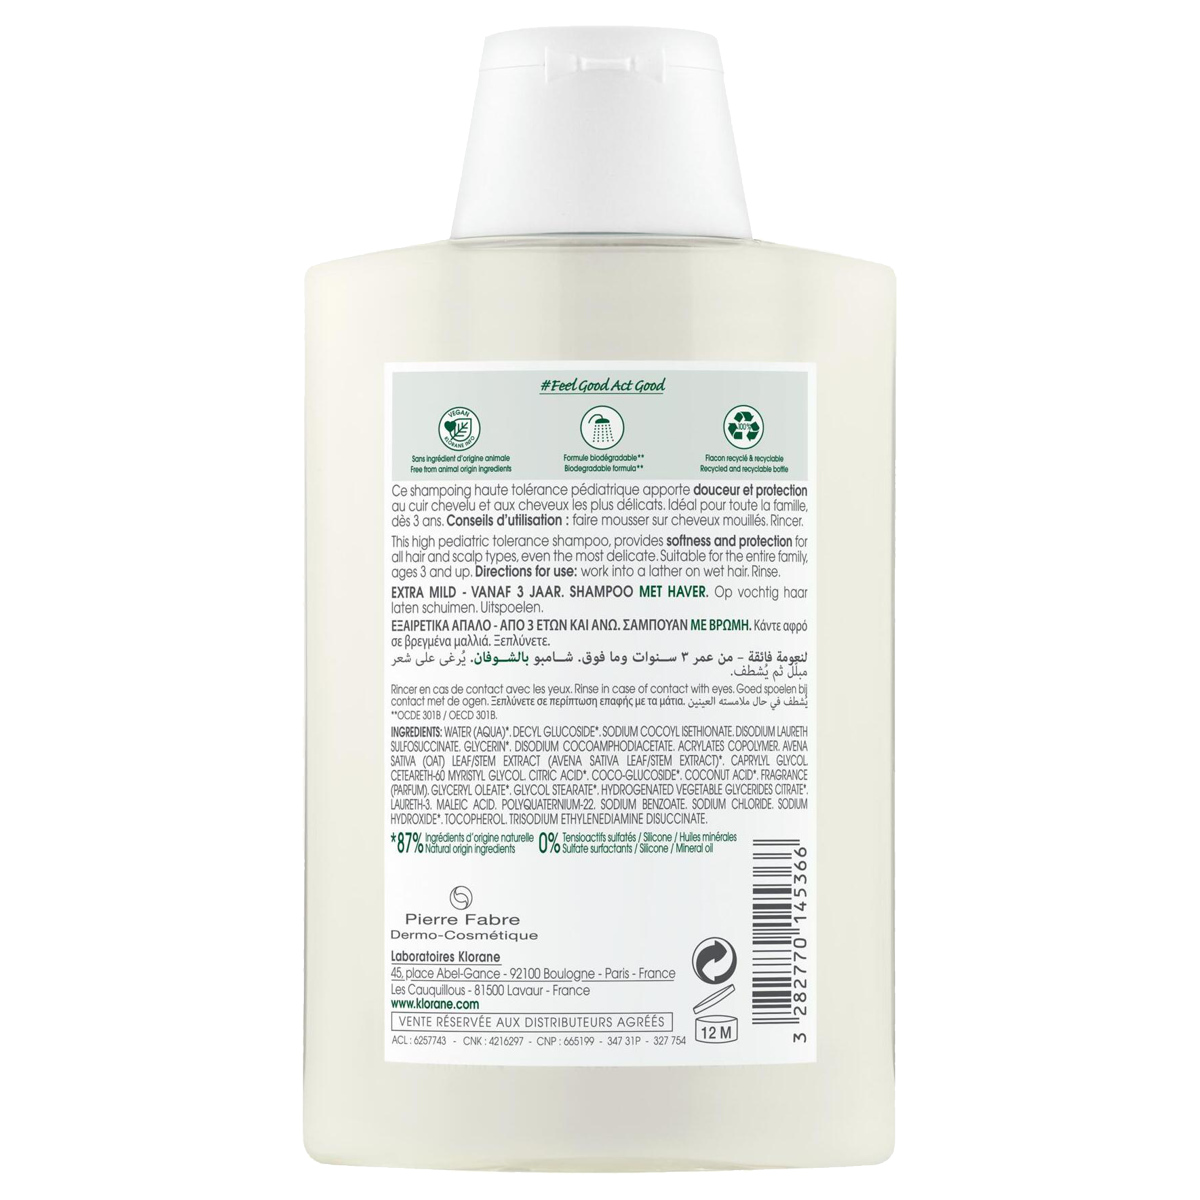 Klorane Hafermilch Shampoo 200 ml